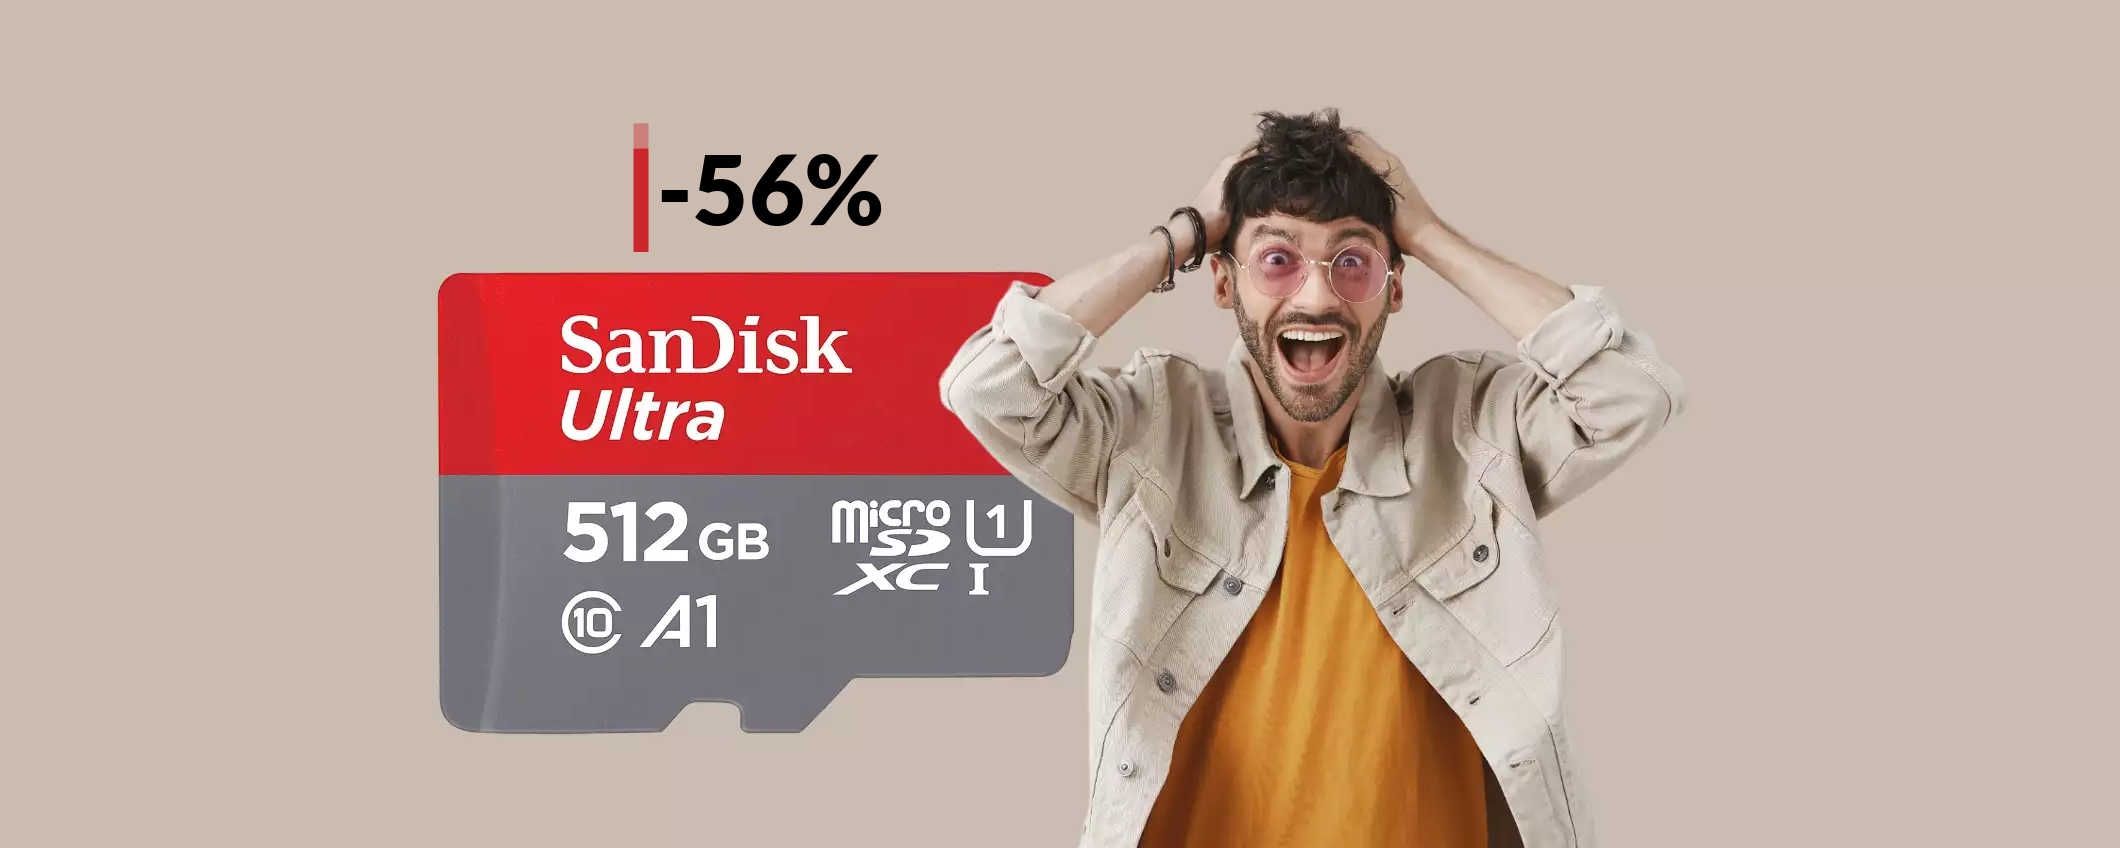 MicroSD SanDisk 512GB a meno di metà prezzo: con 51€ è tua